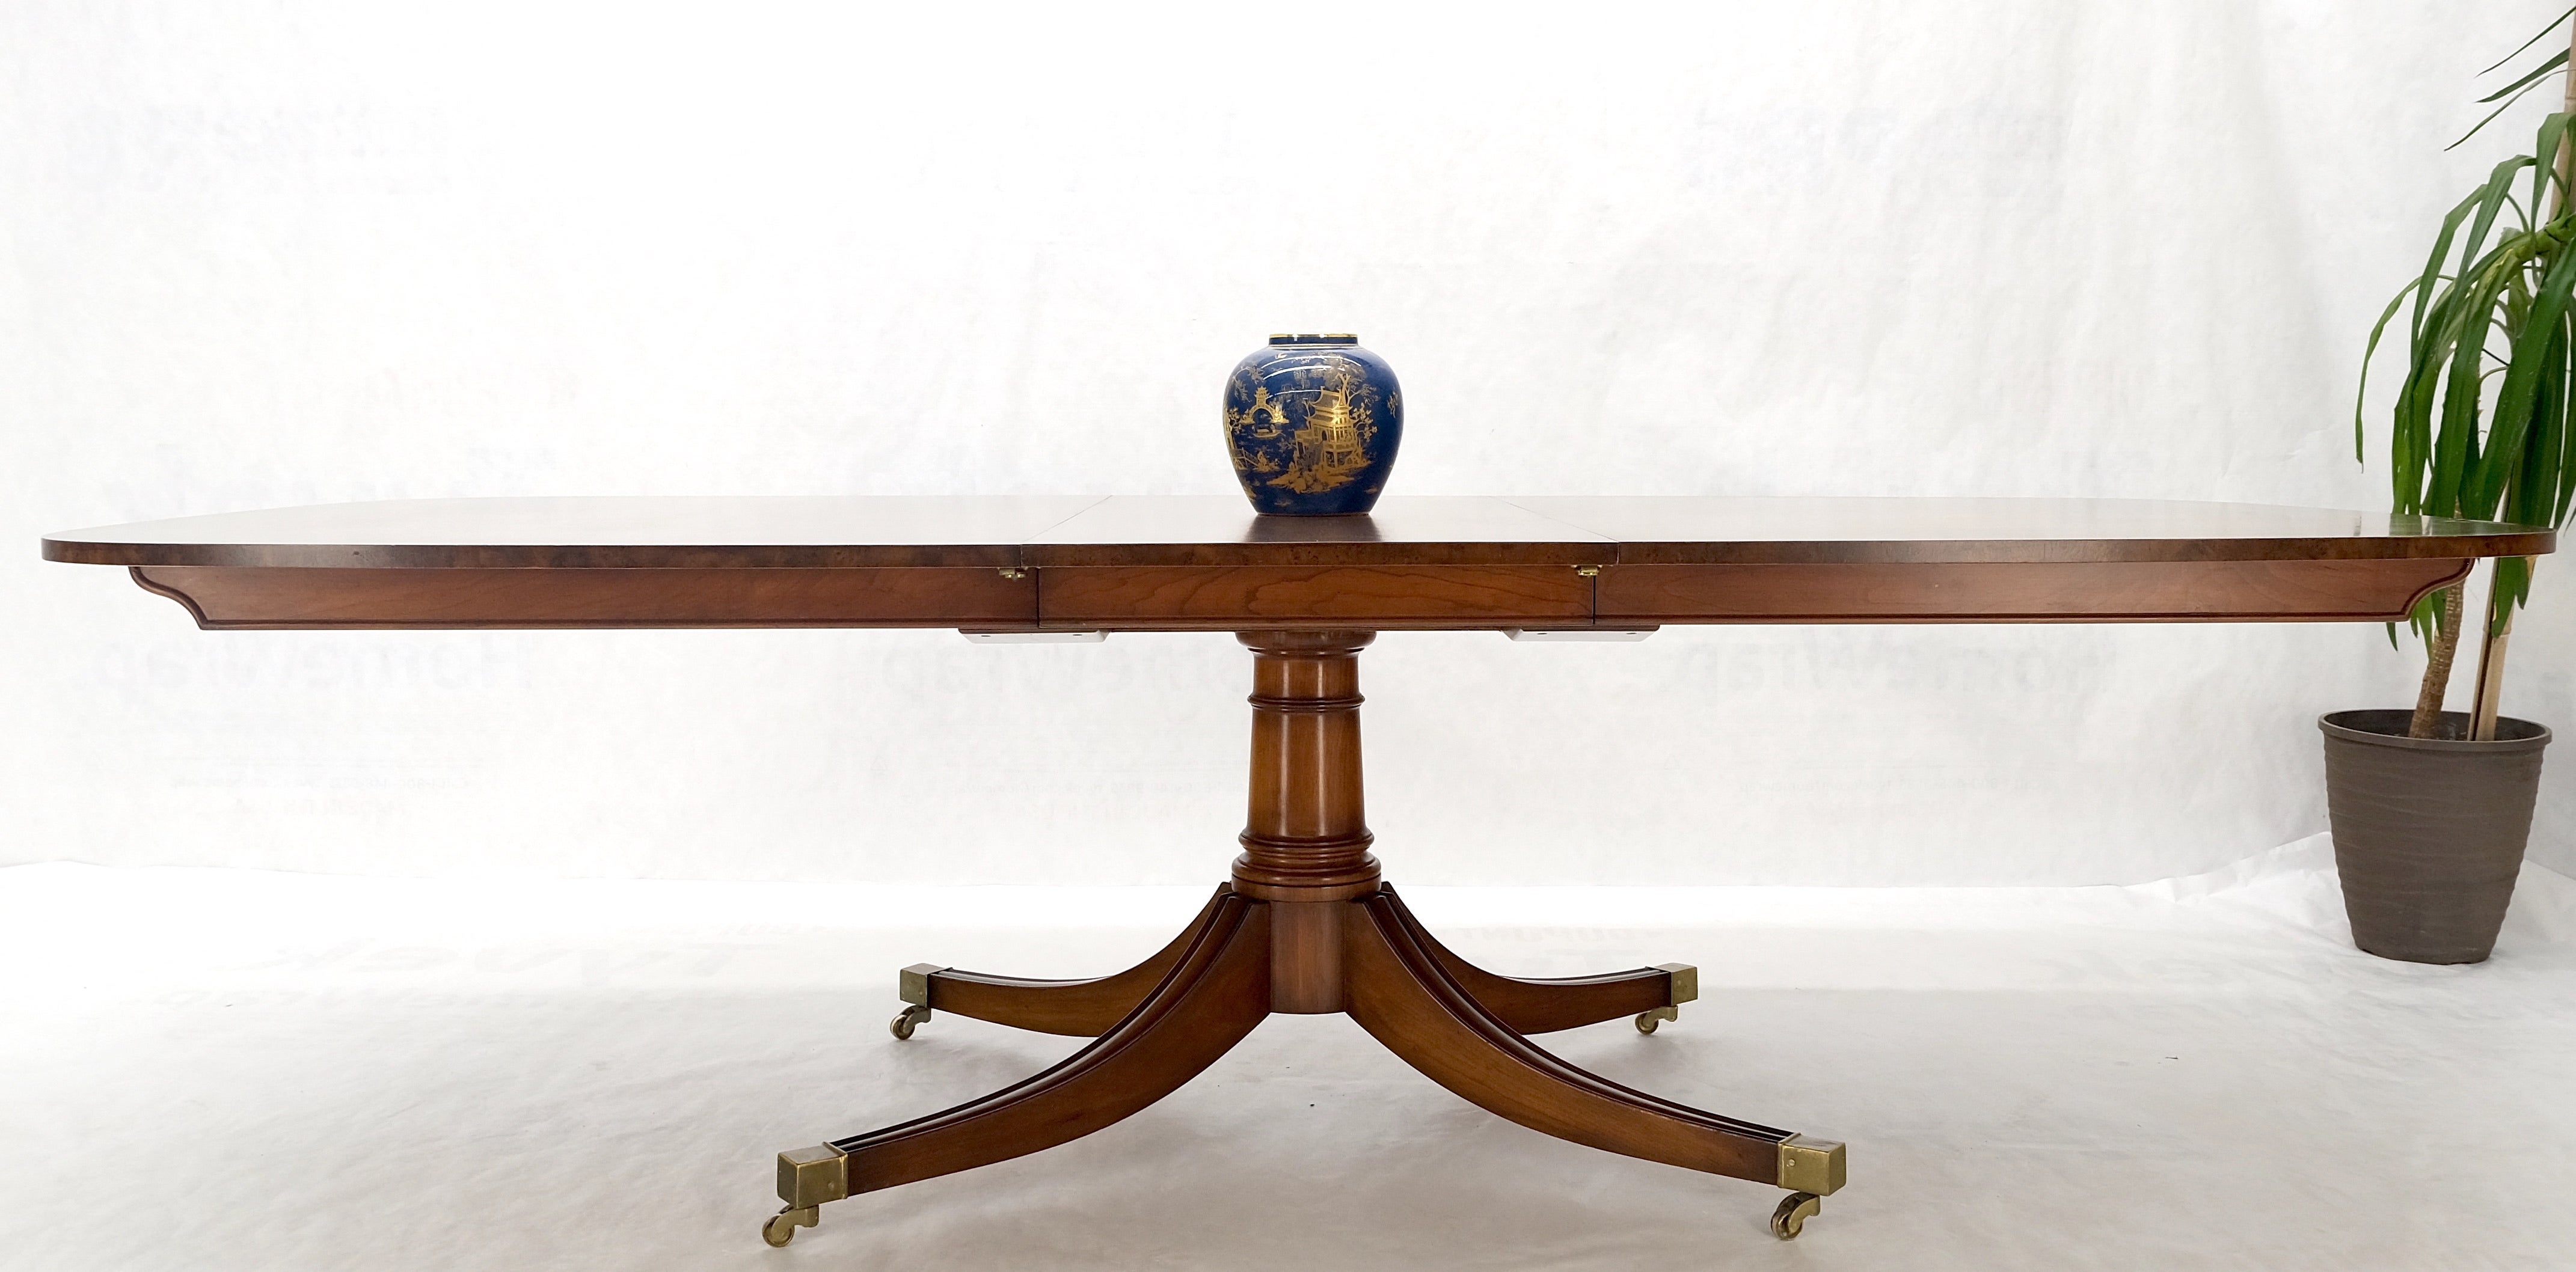 Single Pedestal Ein Blatt Oval Banded Dining Table 8 Regency Stühle Set MINT!

ABMESSUNGEN

Tisch: 52 x 84 × 30
Blatt: 1 × 22

Stuhl: 21 x 21 × 34
Sitzhöhe: 21

ein Tisch und eine Platte, acht Stühle